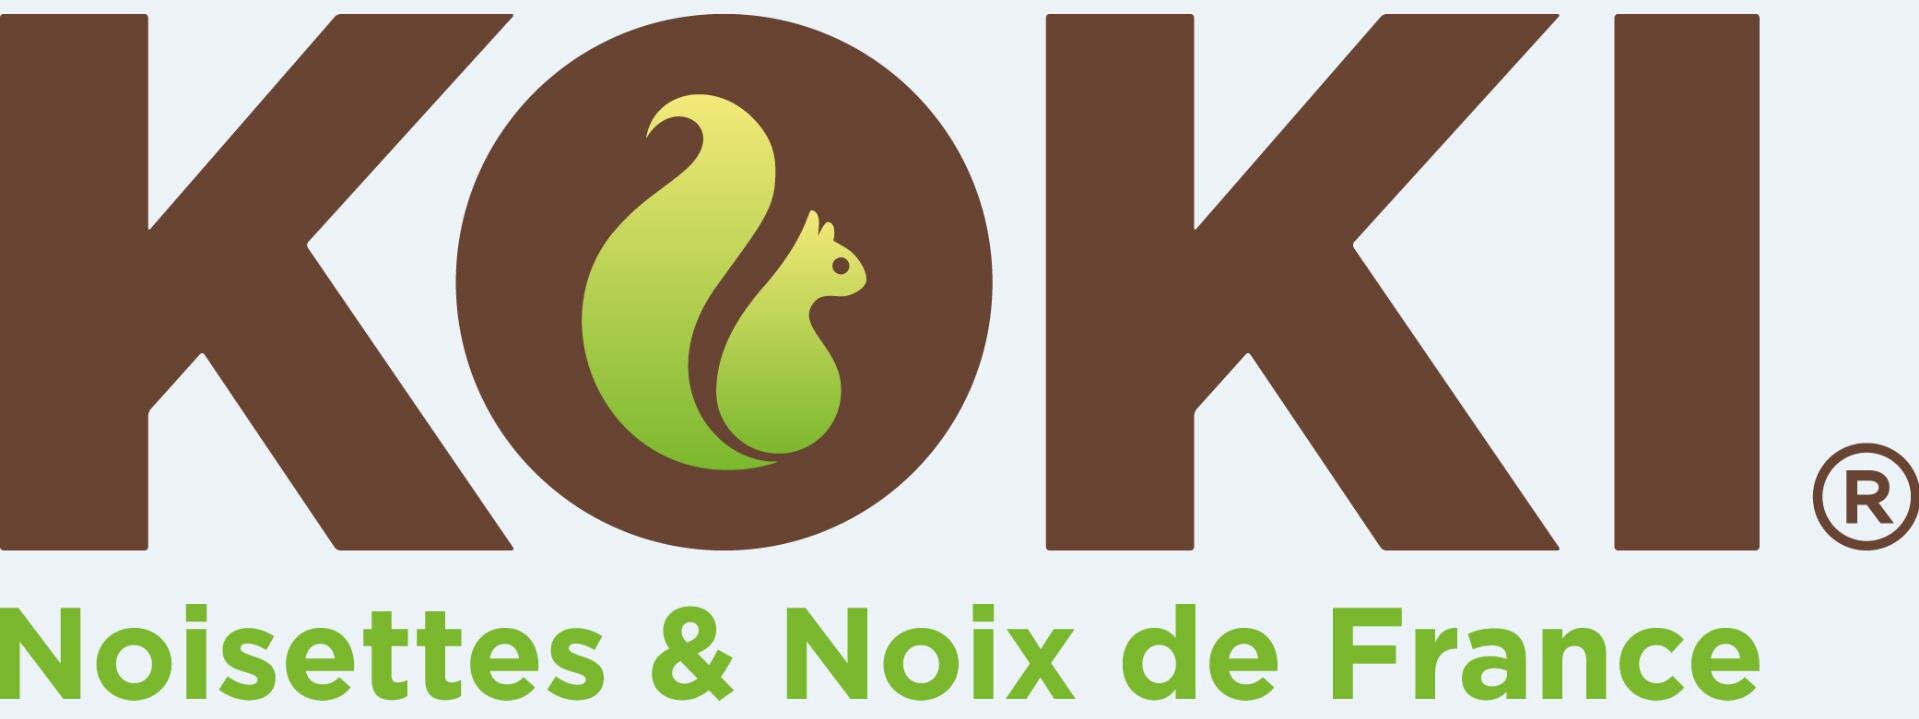 logo COOPERATIVE UNICOQUE KOKI